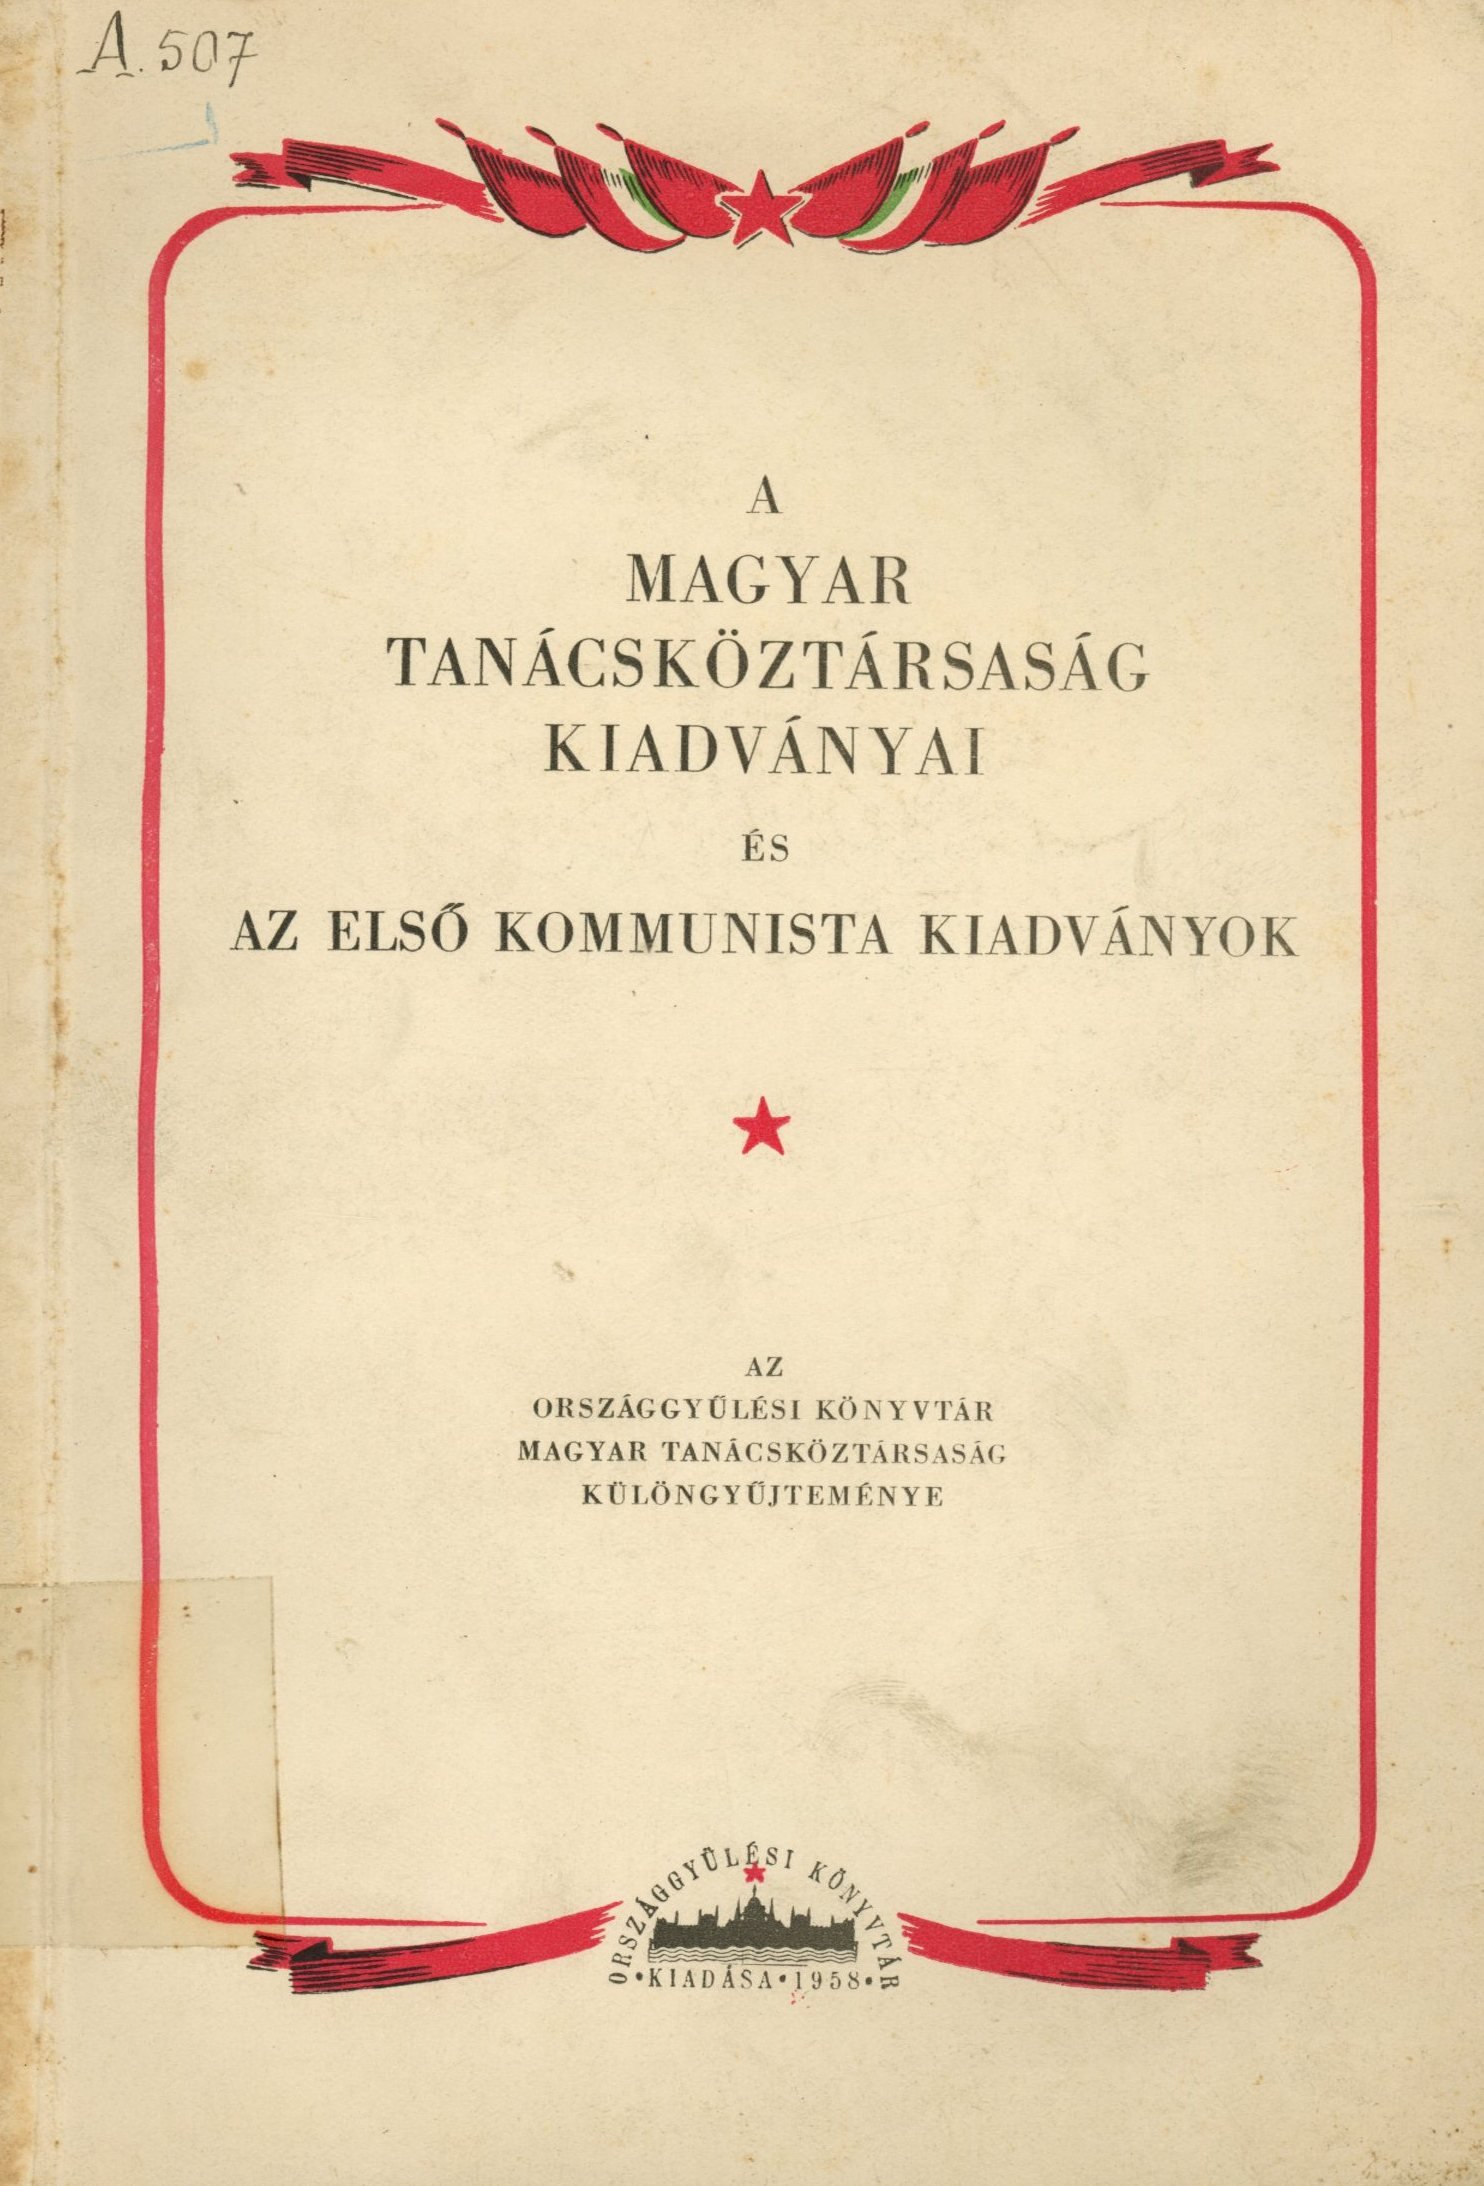 A Magyar Tanácsköztársaság Kiadványai és az első Kommunista Kiadványok (Erkel Ferenc Területi Múzeum, Gyula CC BY-NC-SA)